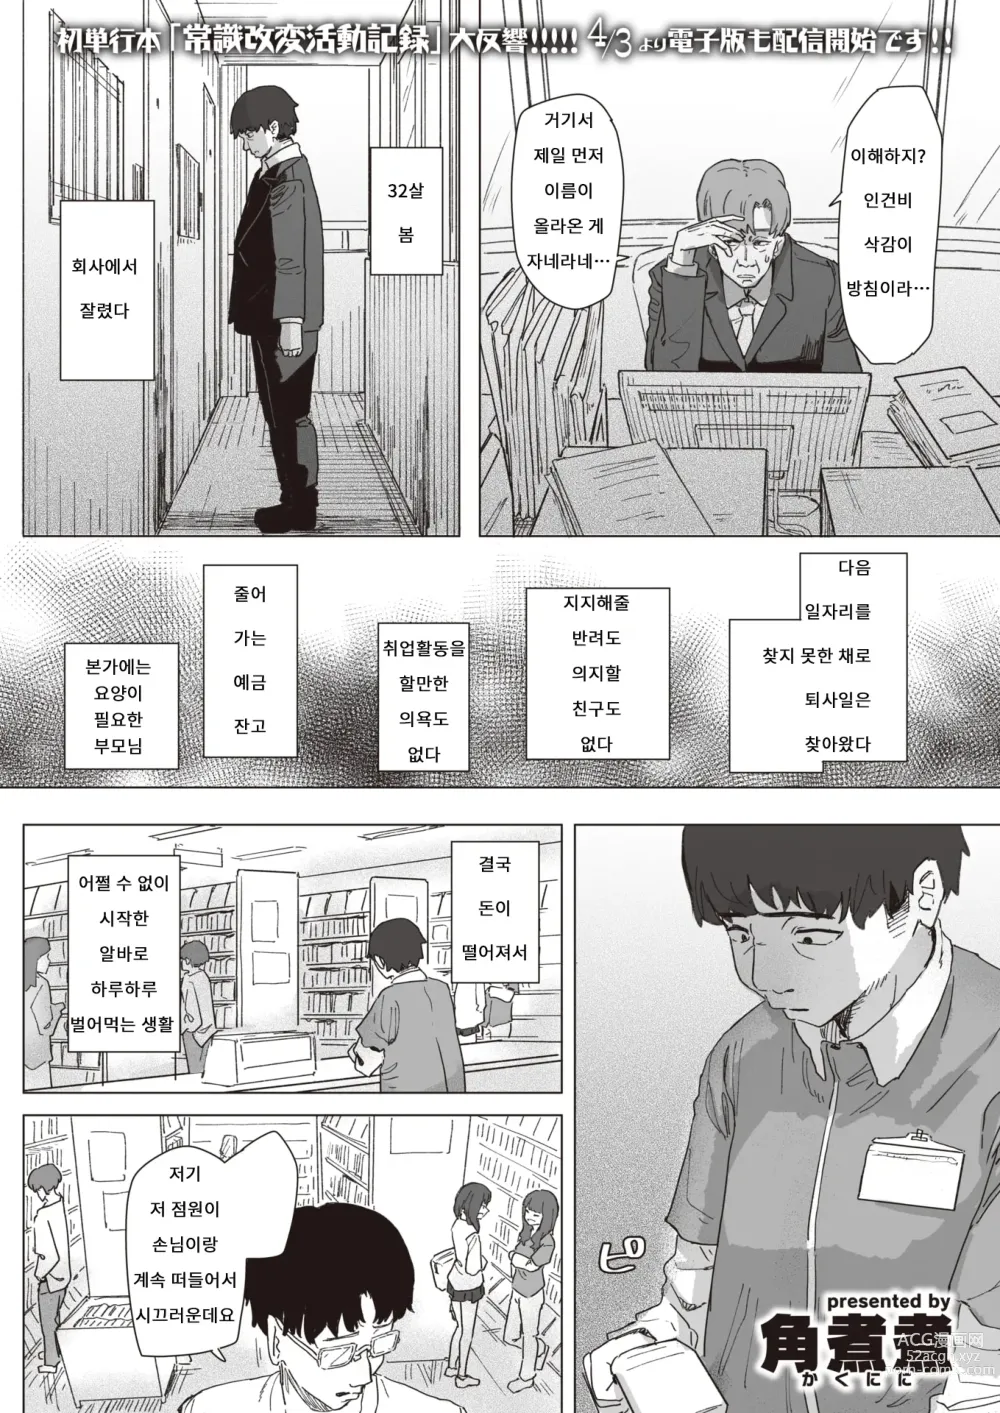 Page 1 of manga 마법소녀의 은혜갚기 전편